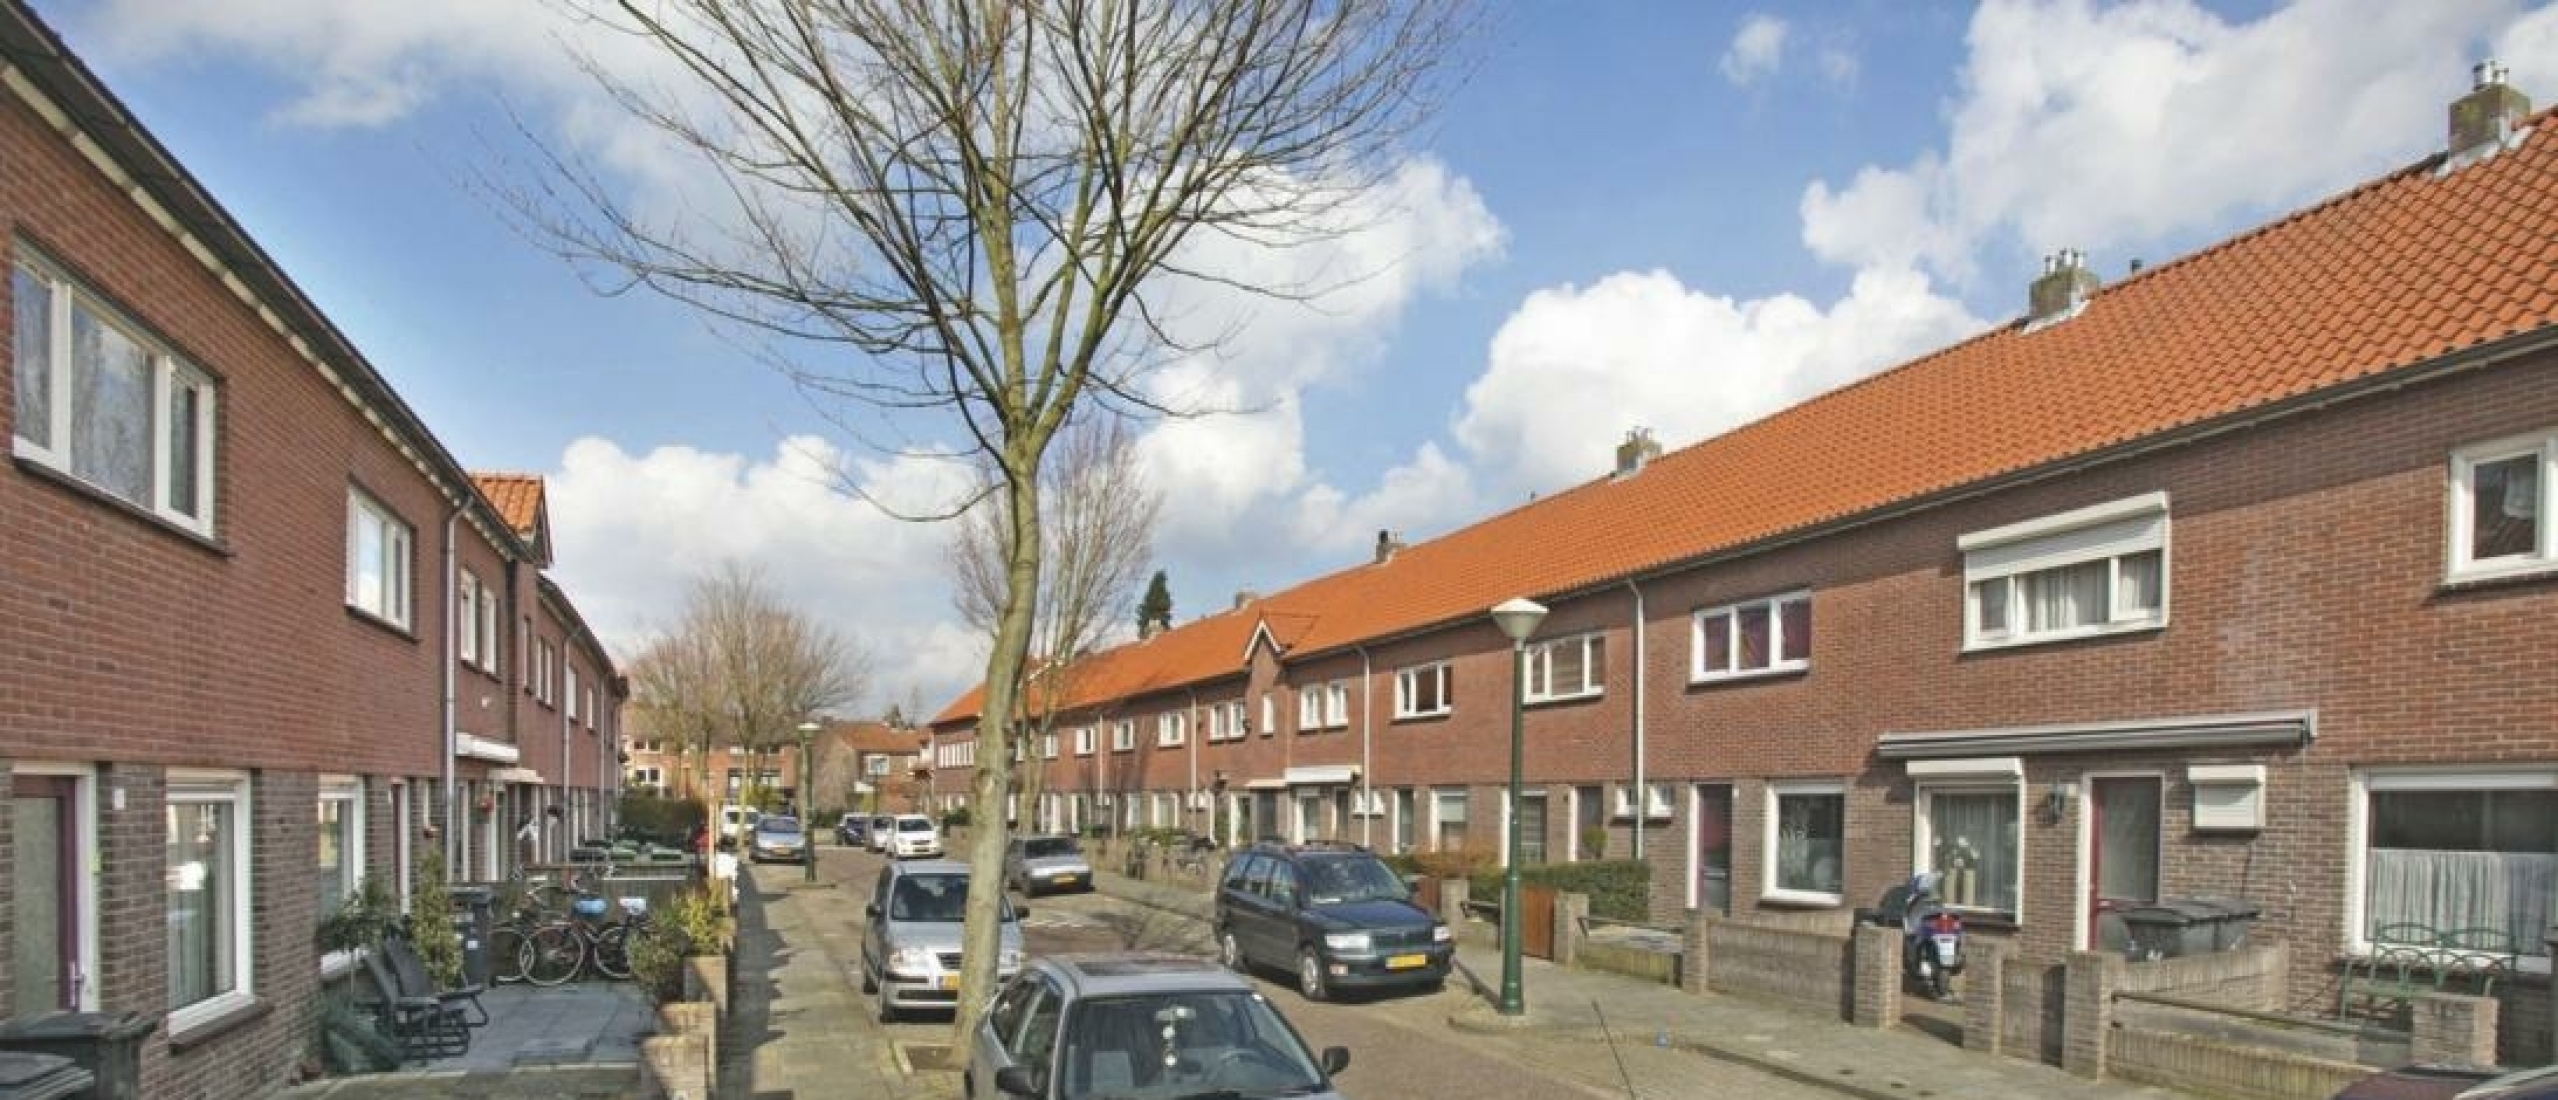 Profiteren Nederlandse huishoudens wel van het energieprijsplafond?